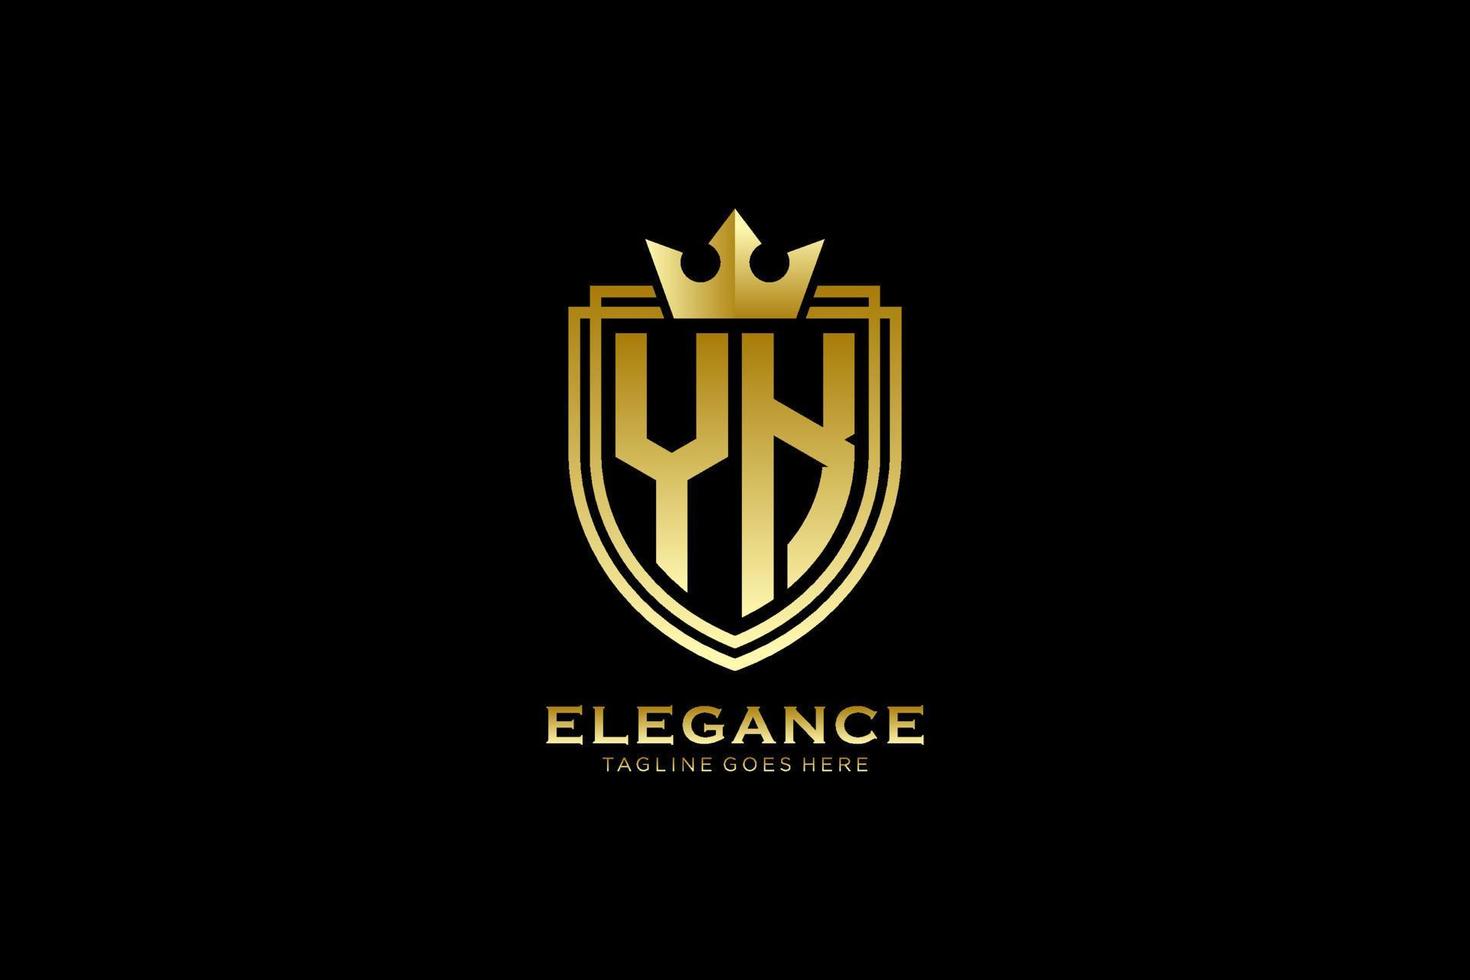 första yk elegant lyx monogram logotyp eller bricka mall med rullar och kunglig krona - perfekt för lyxig branding projekt vektor